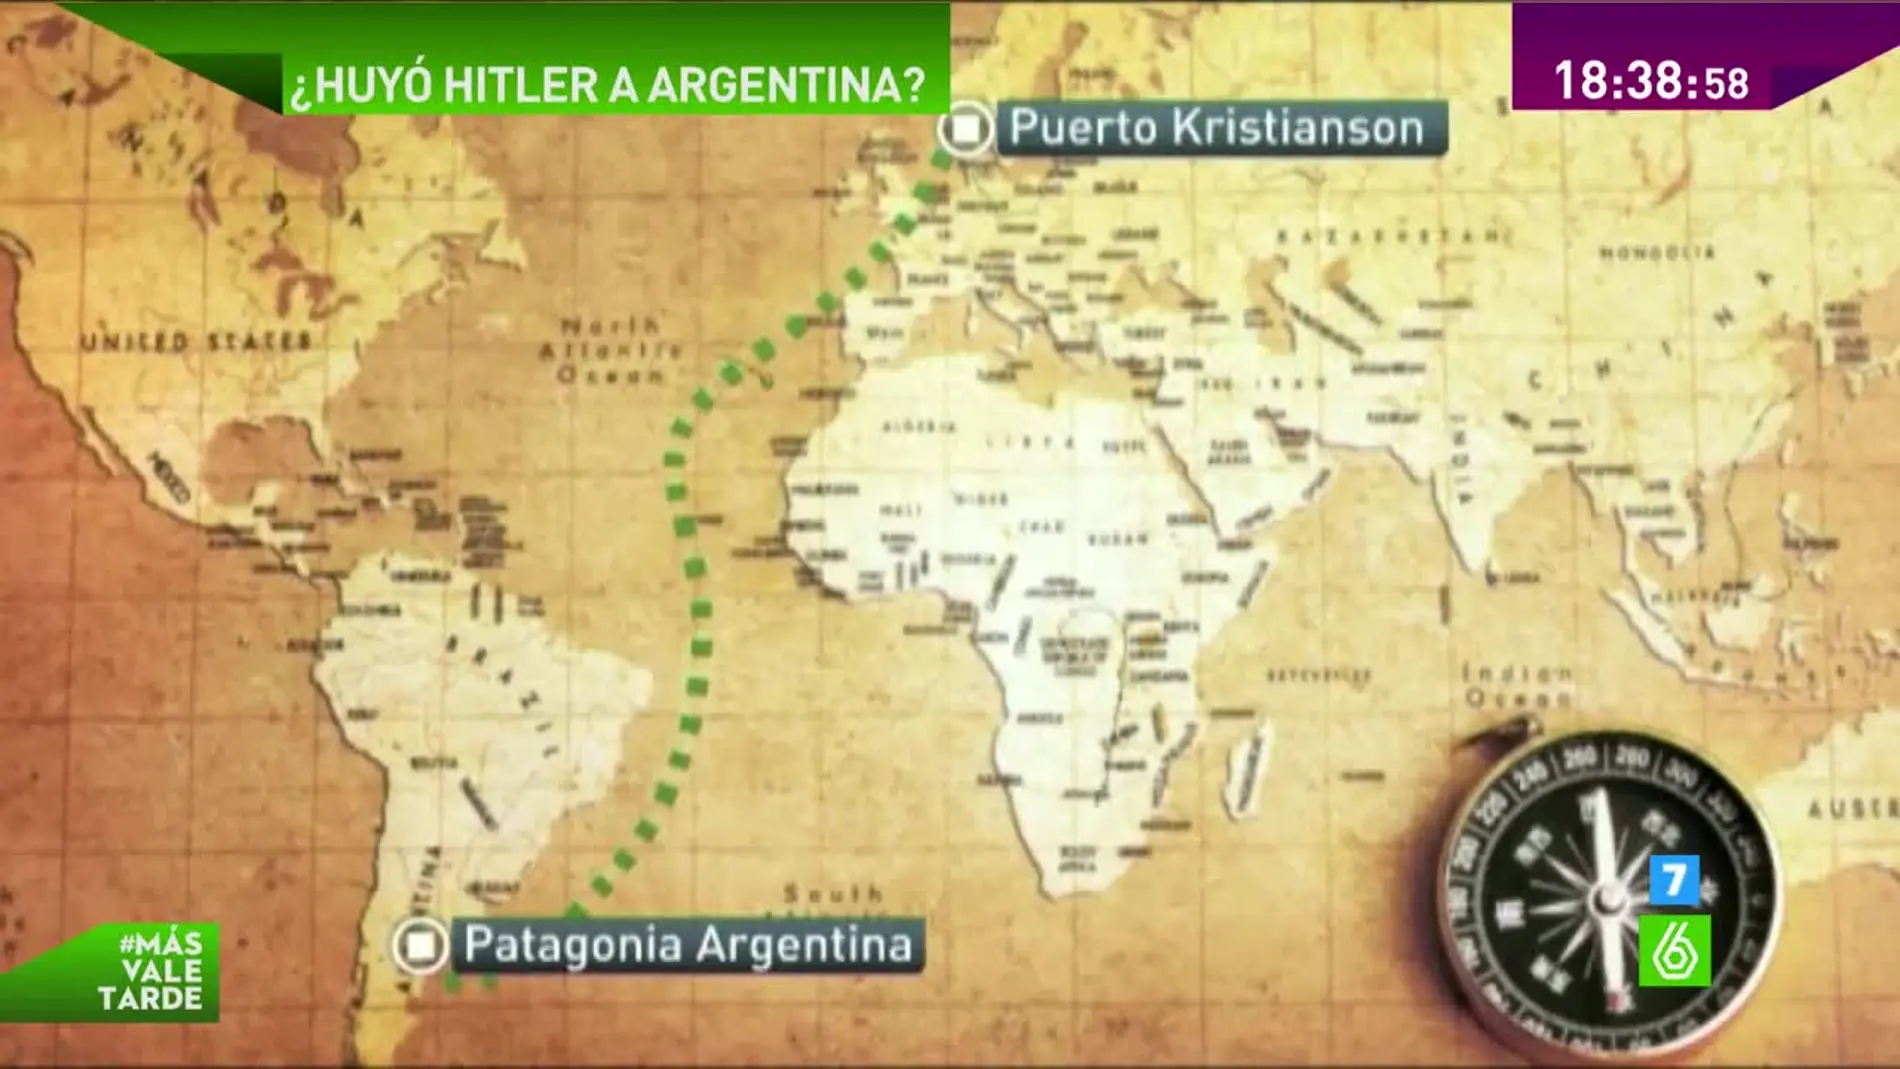 Ruta que habría seguido Hitler en su posible huida a Argentina